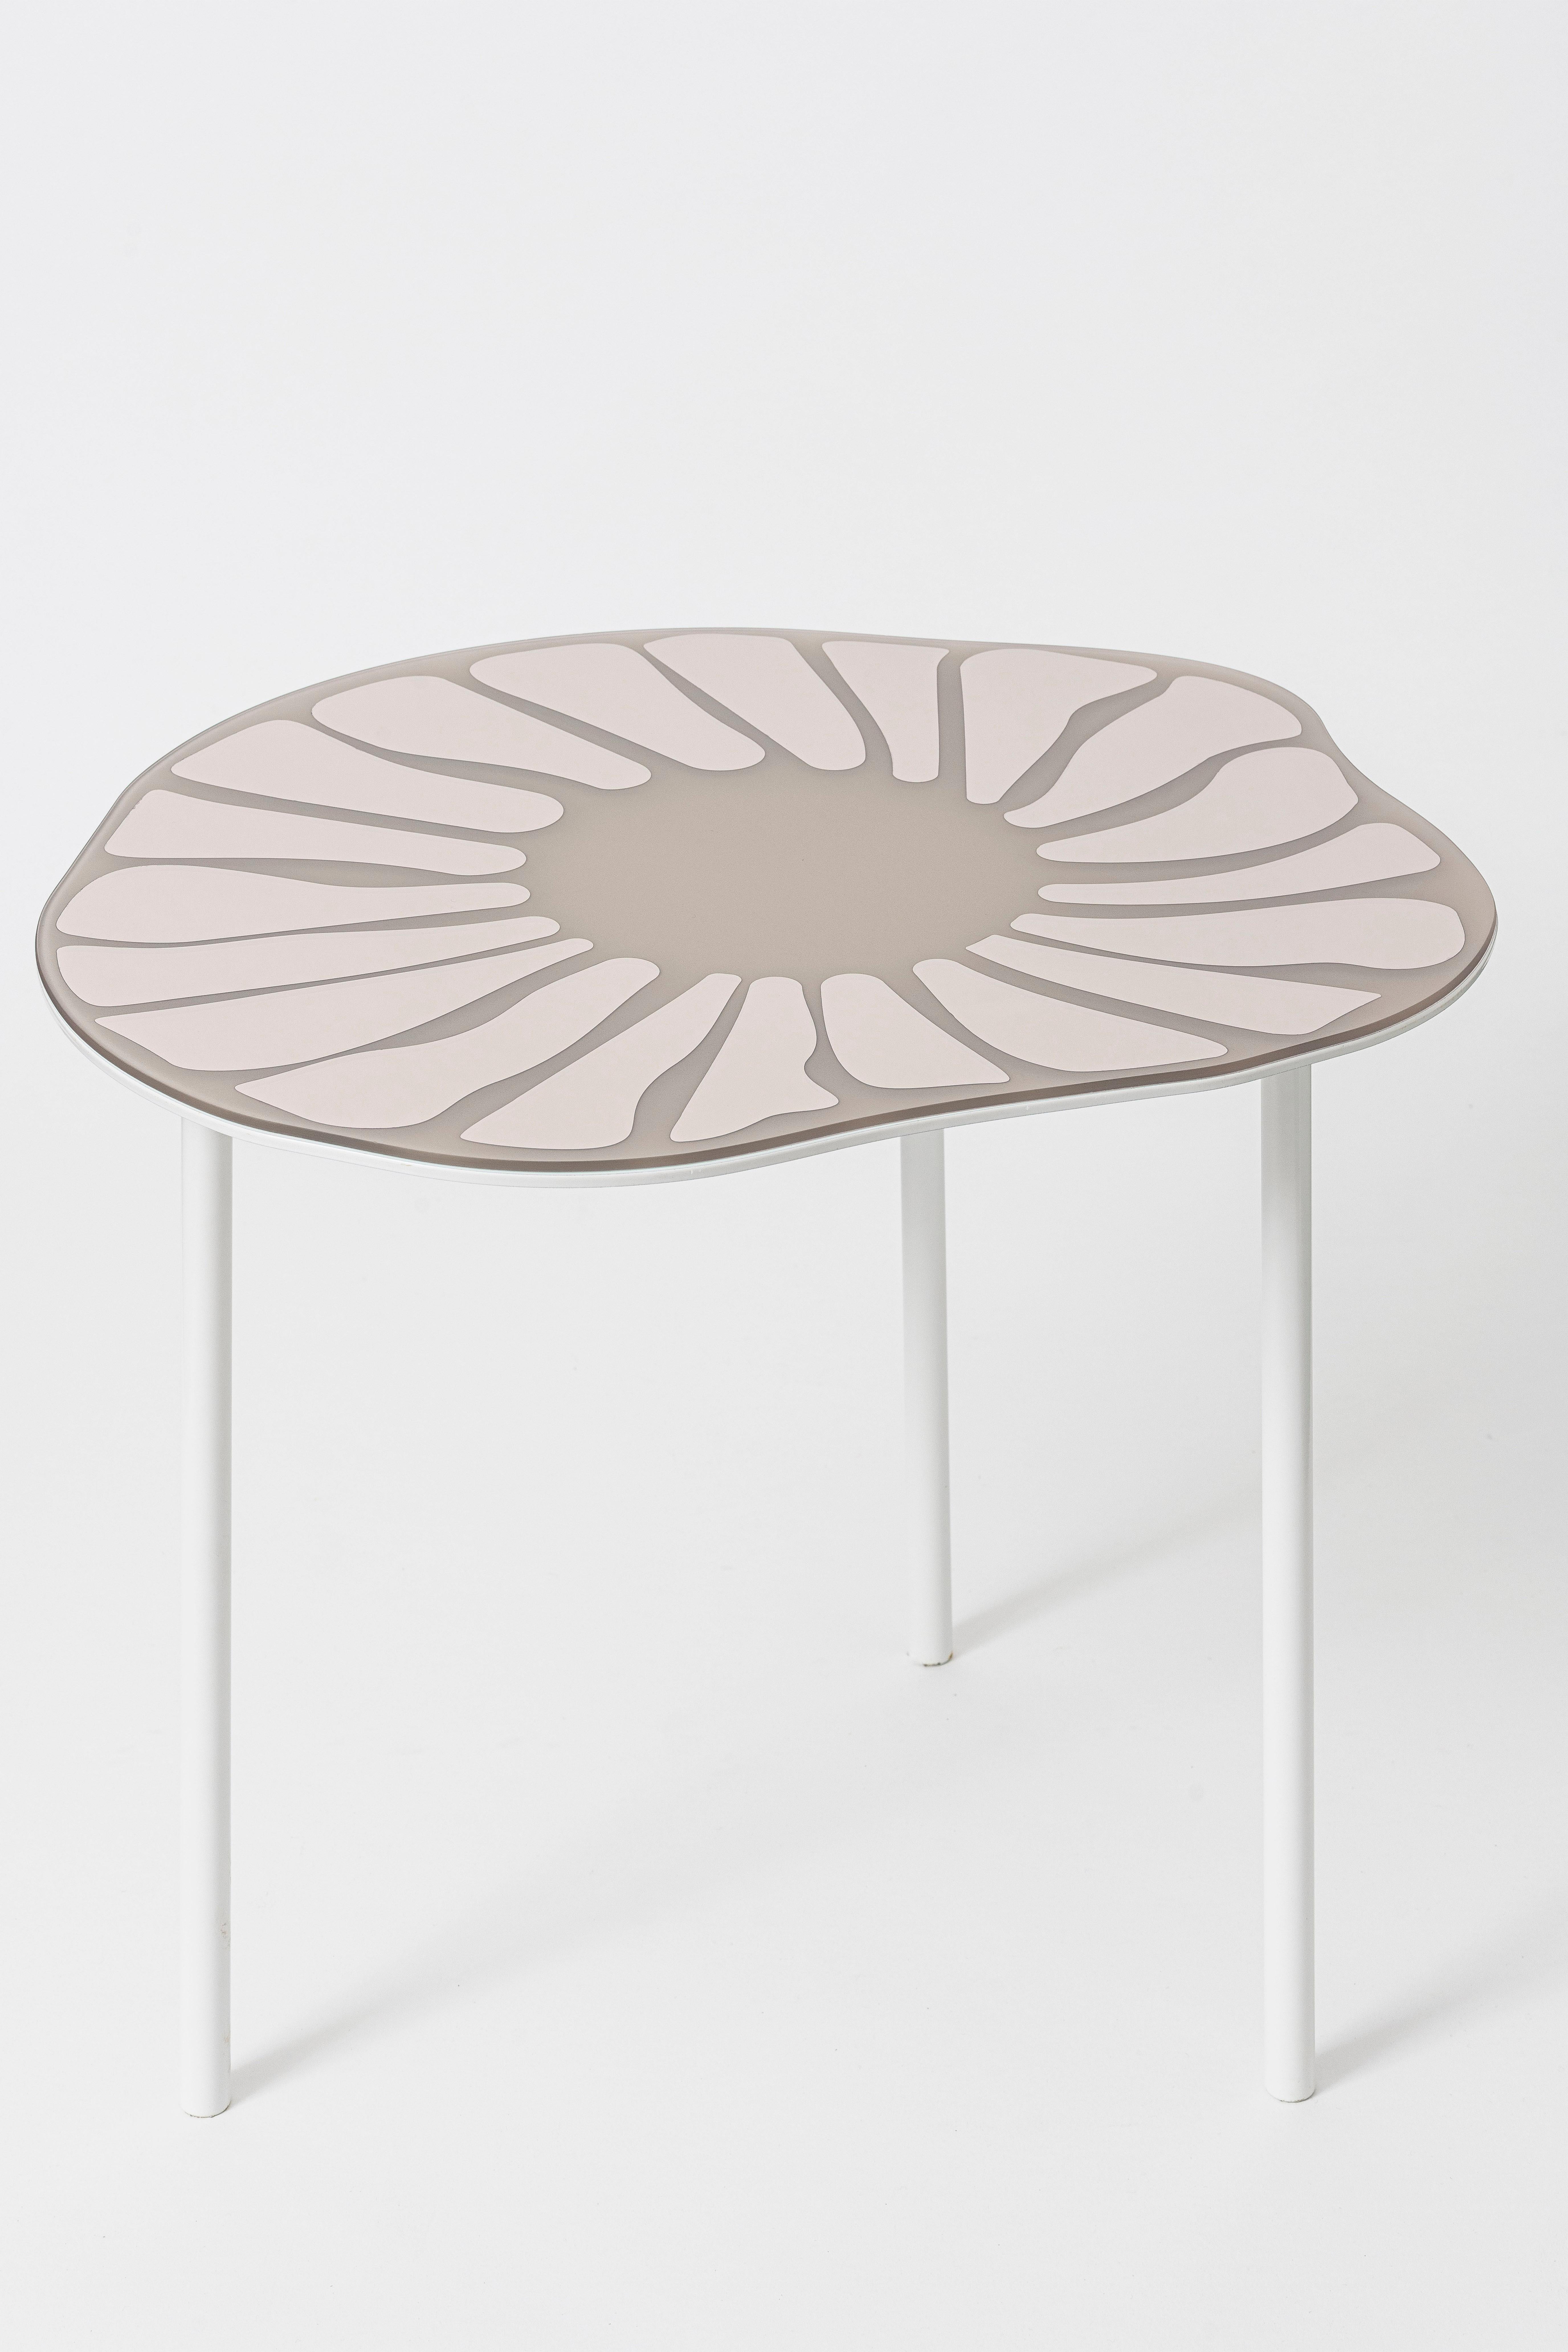 Cesareo est une table basse composée de surfaces miroirs soigneusement sélectionnées et de métal laqué avec une finition mate.
Le produit se caractérise par des lignes douces et ondulantes qui rappellent le monde naturel.
La forme de la table